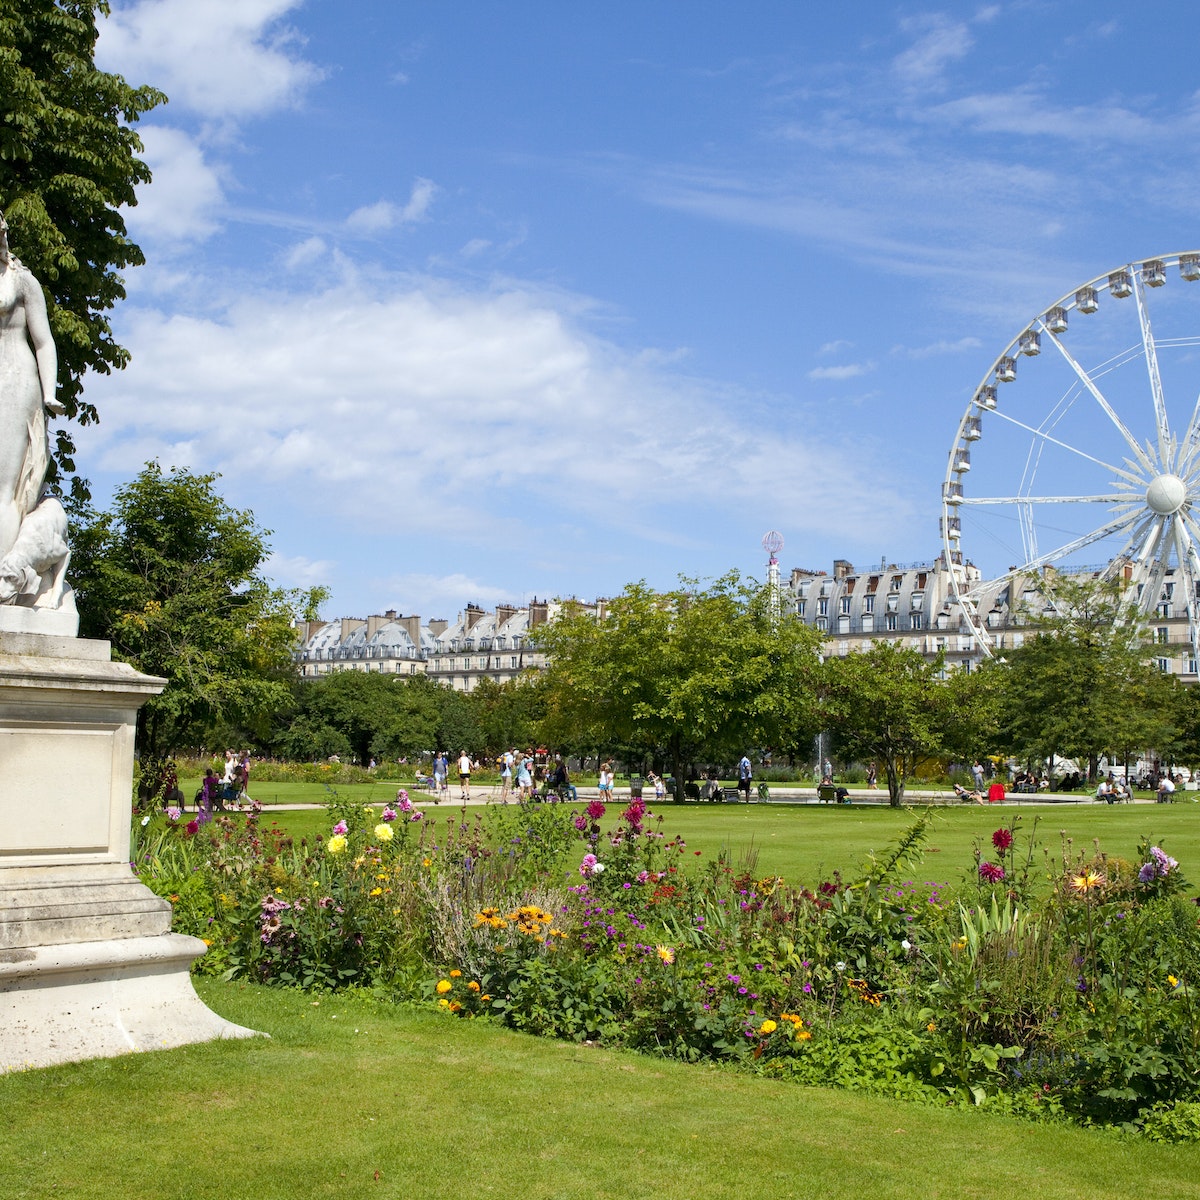 The Jardin des Tuileries in Paris.